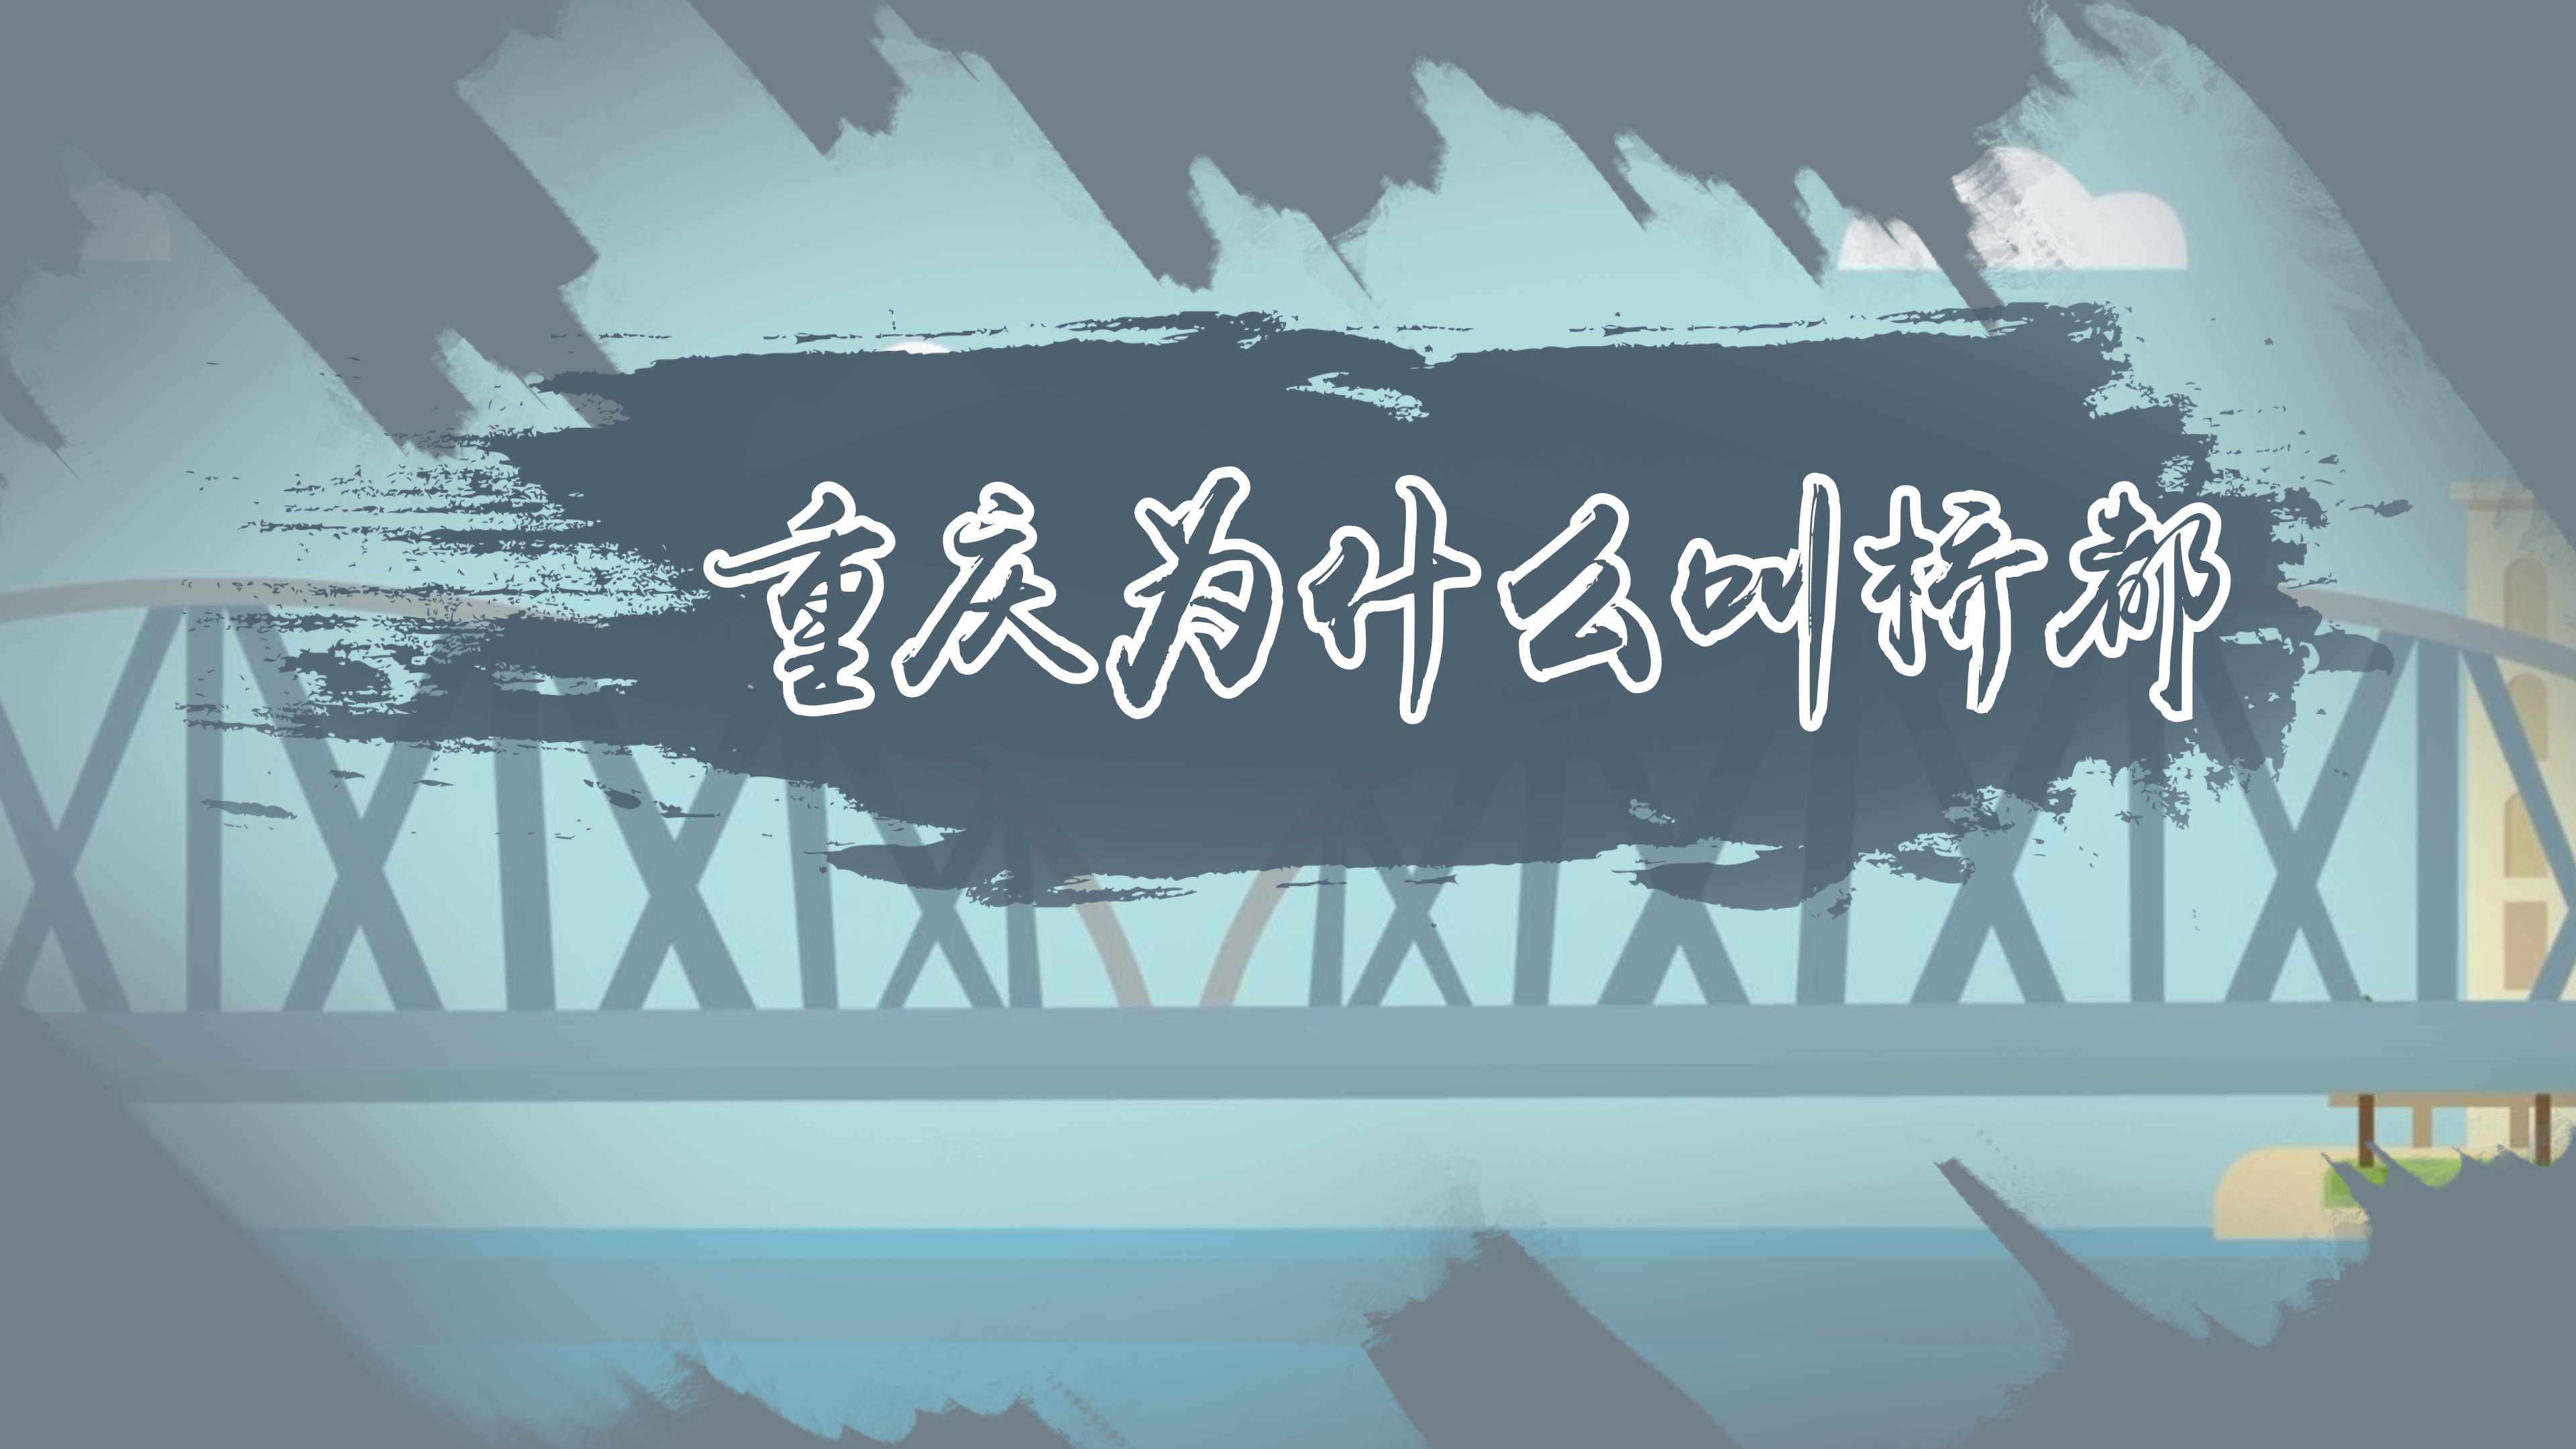 重庆为什么叫桥都 重庆有什么桥